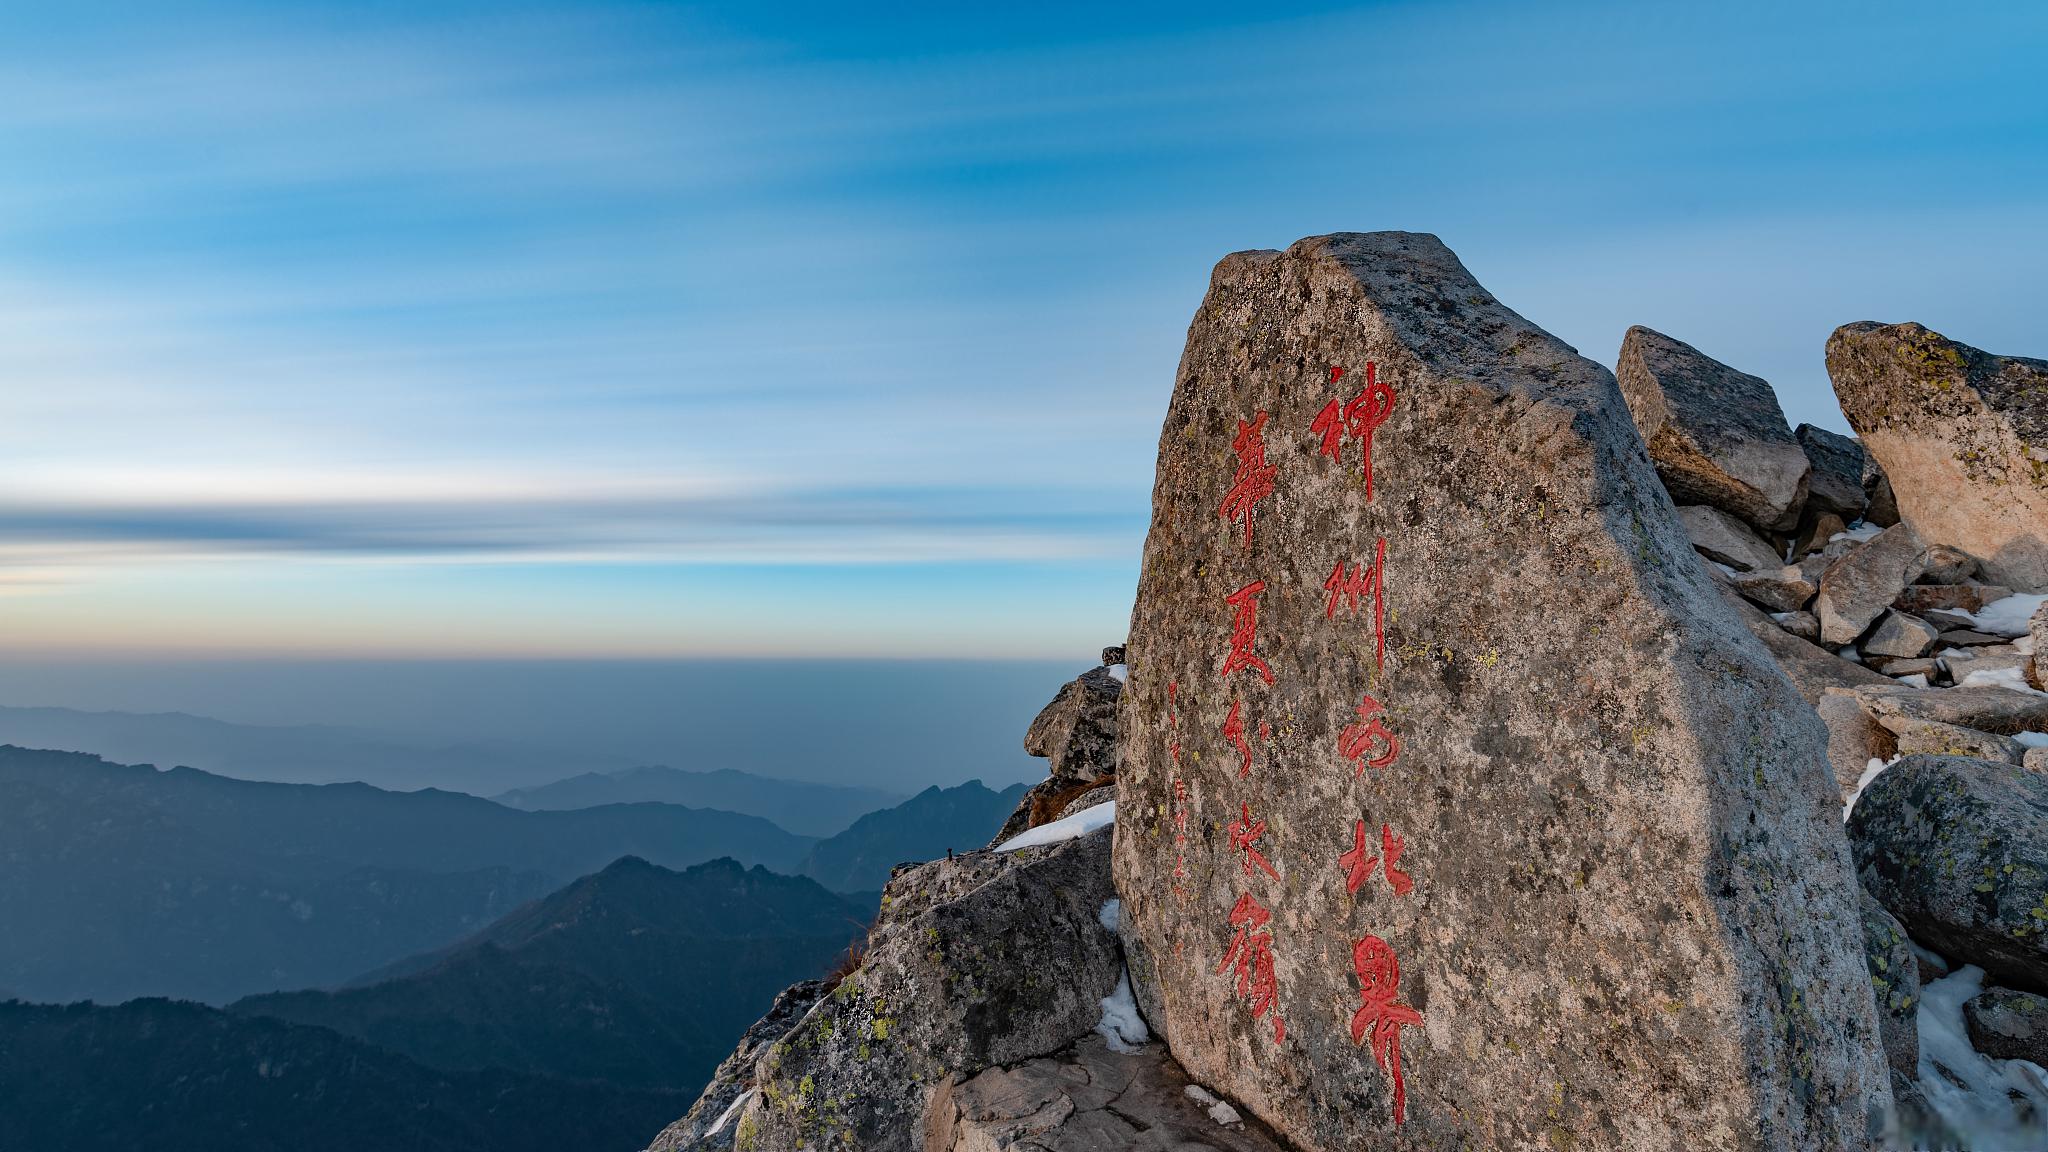 太白山旅游景点介绍 太白山,位于中国陕西省宝鸡市,被誉为秦岭之巅